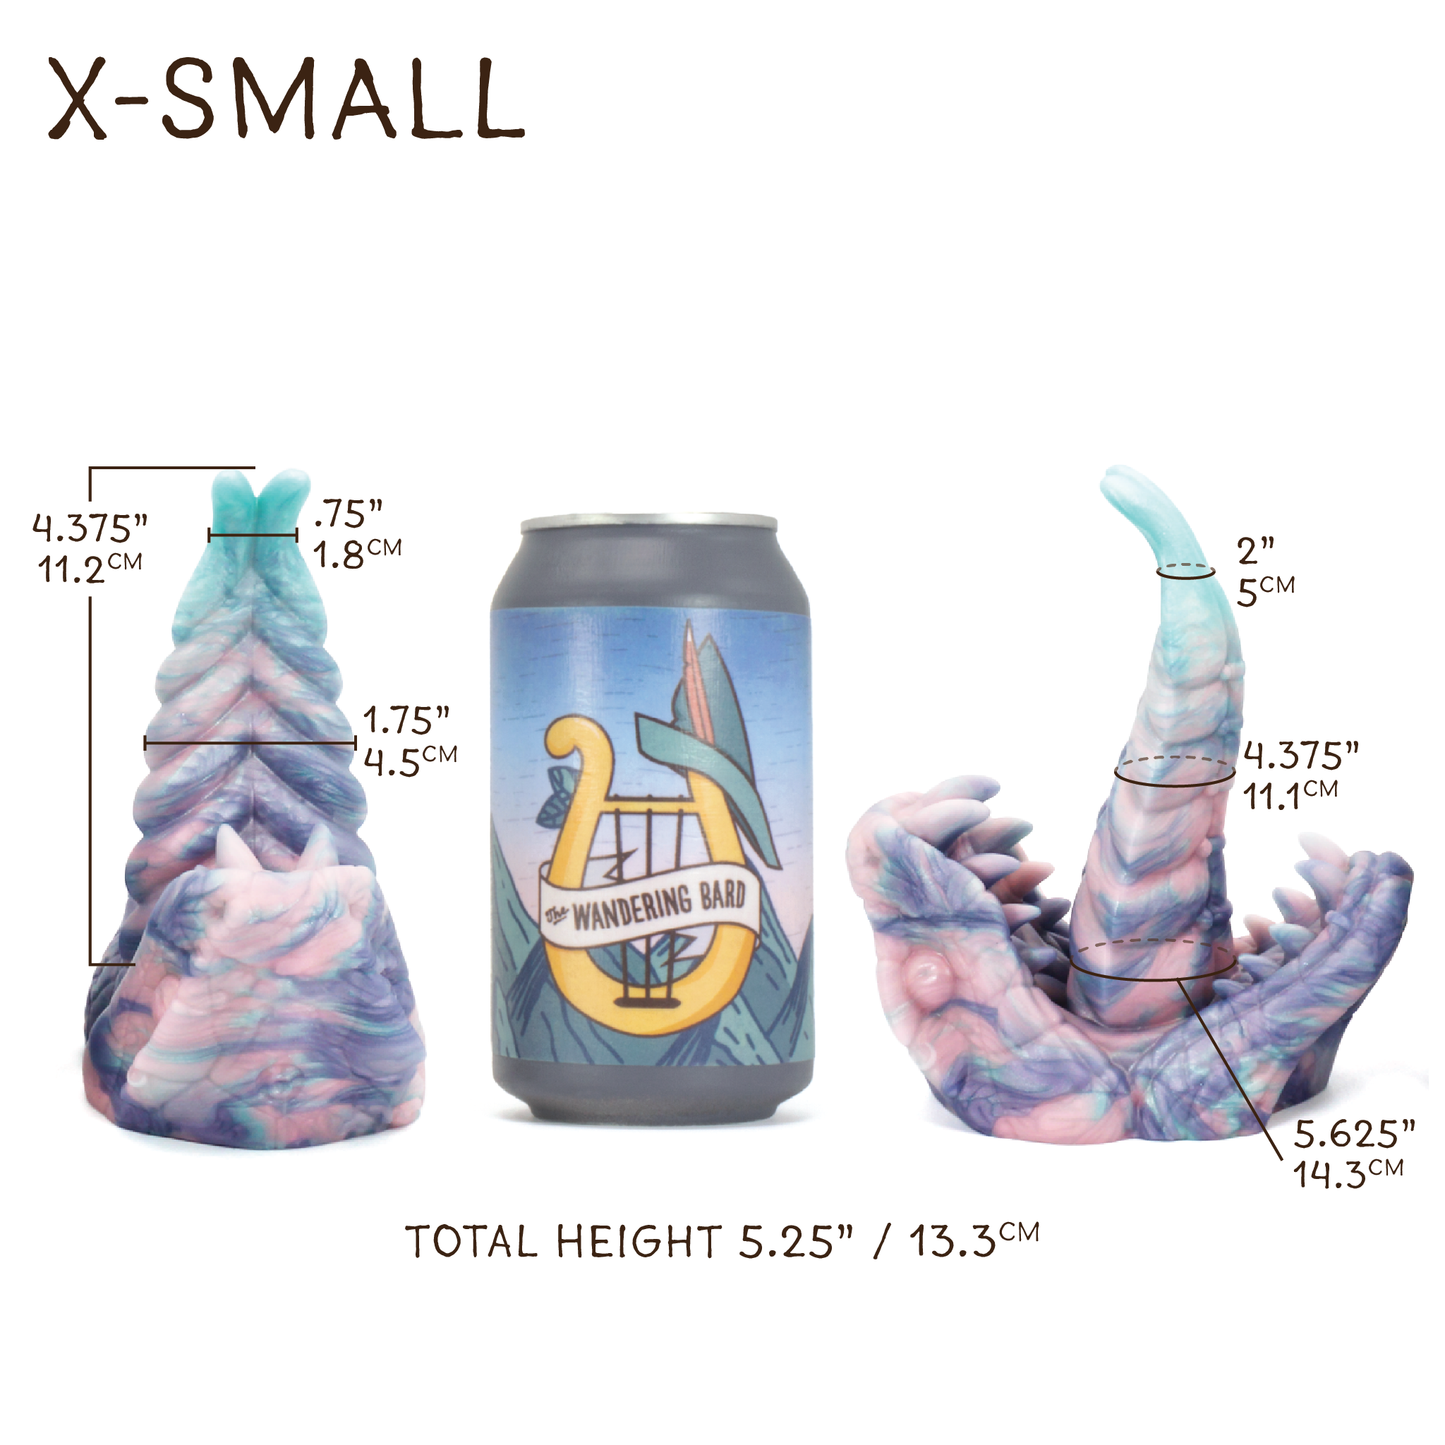 X-Small Yuanti 00-30 Soft Banana Python